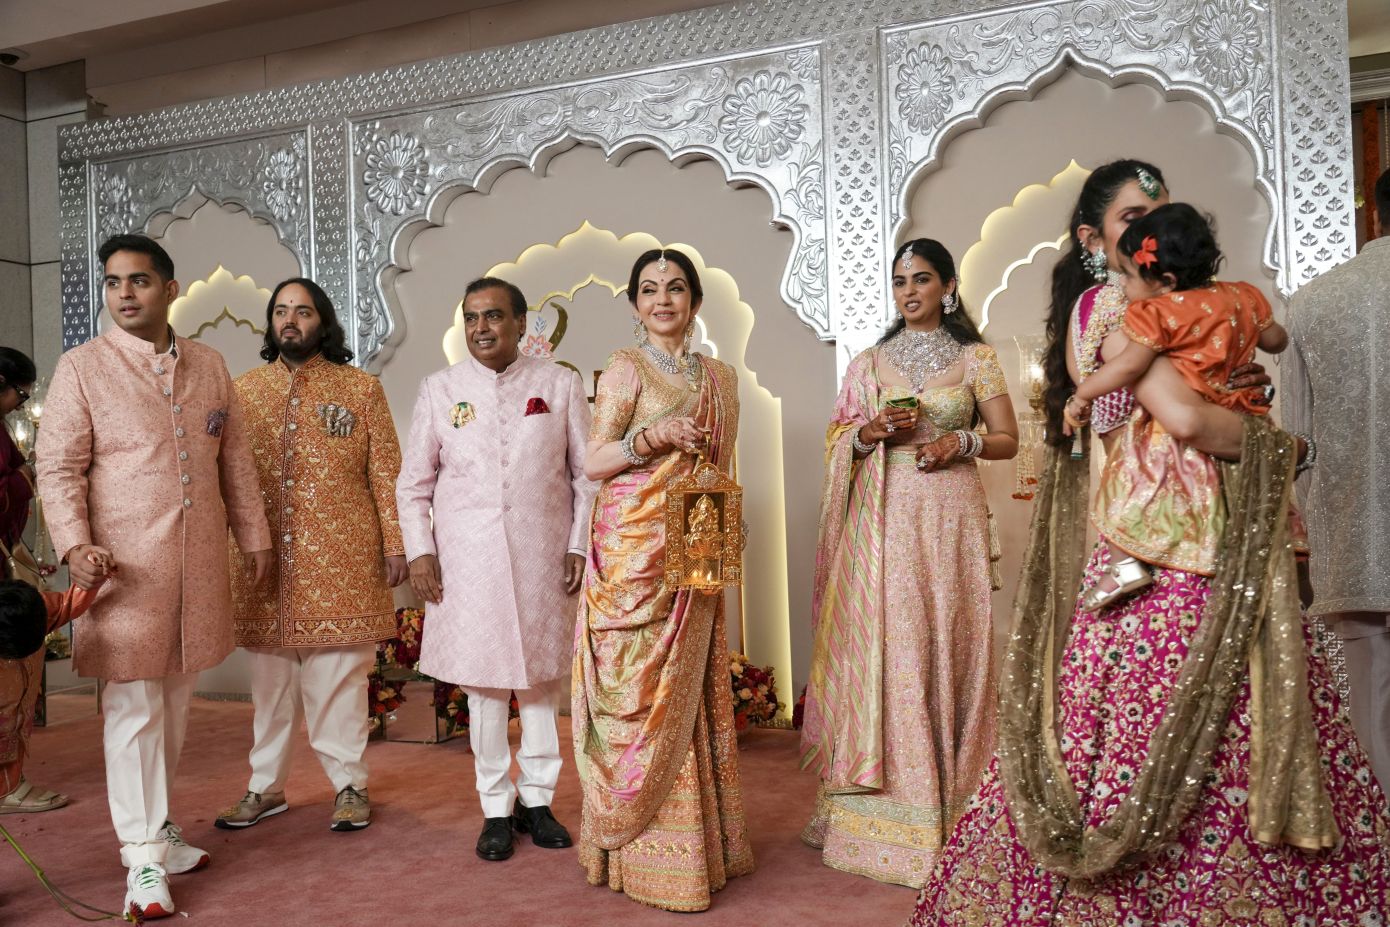 Οι χλιδάτοι 4ήμεροι εορτασμοί για τον γάμο της χρονιάς στην Ινδία και οι αντιδράσεις για την προκλητική επίδειξη πλούτου